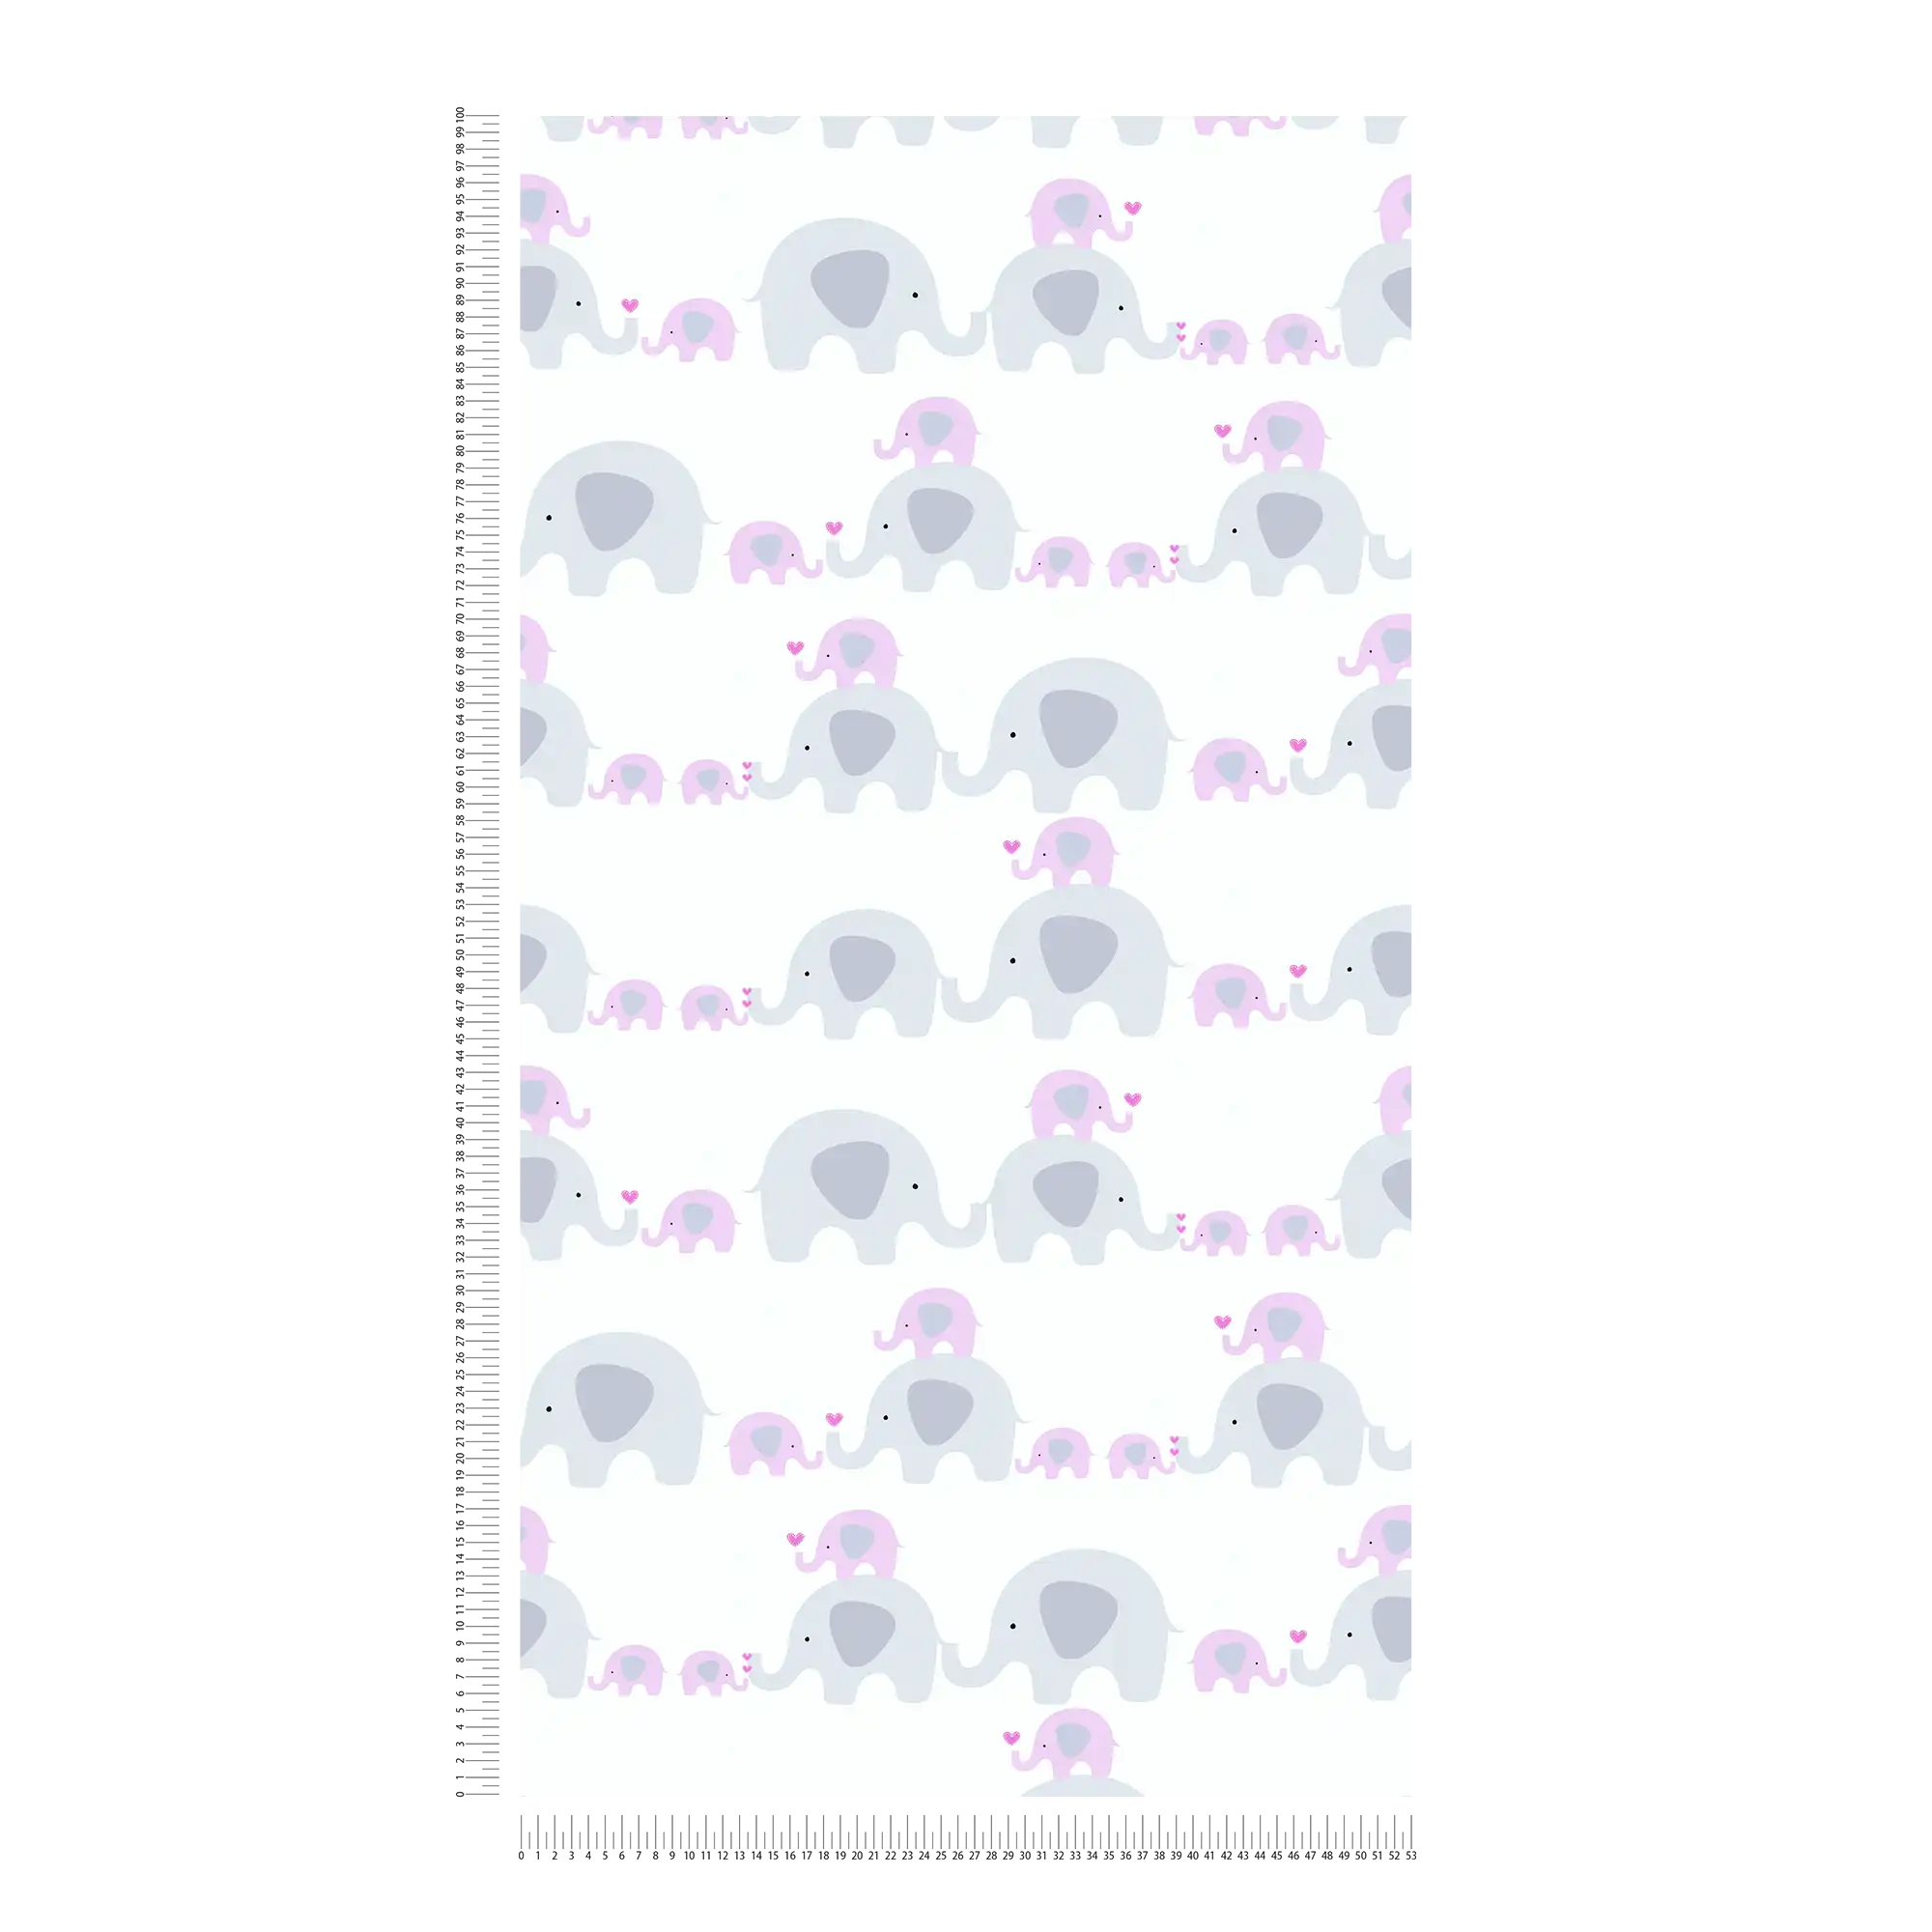             Tapete Mädchenzimmer Elefanten Muster – Rosa, Grau , Weiß
        